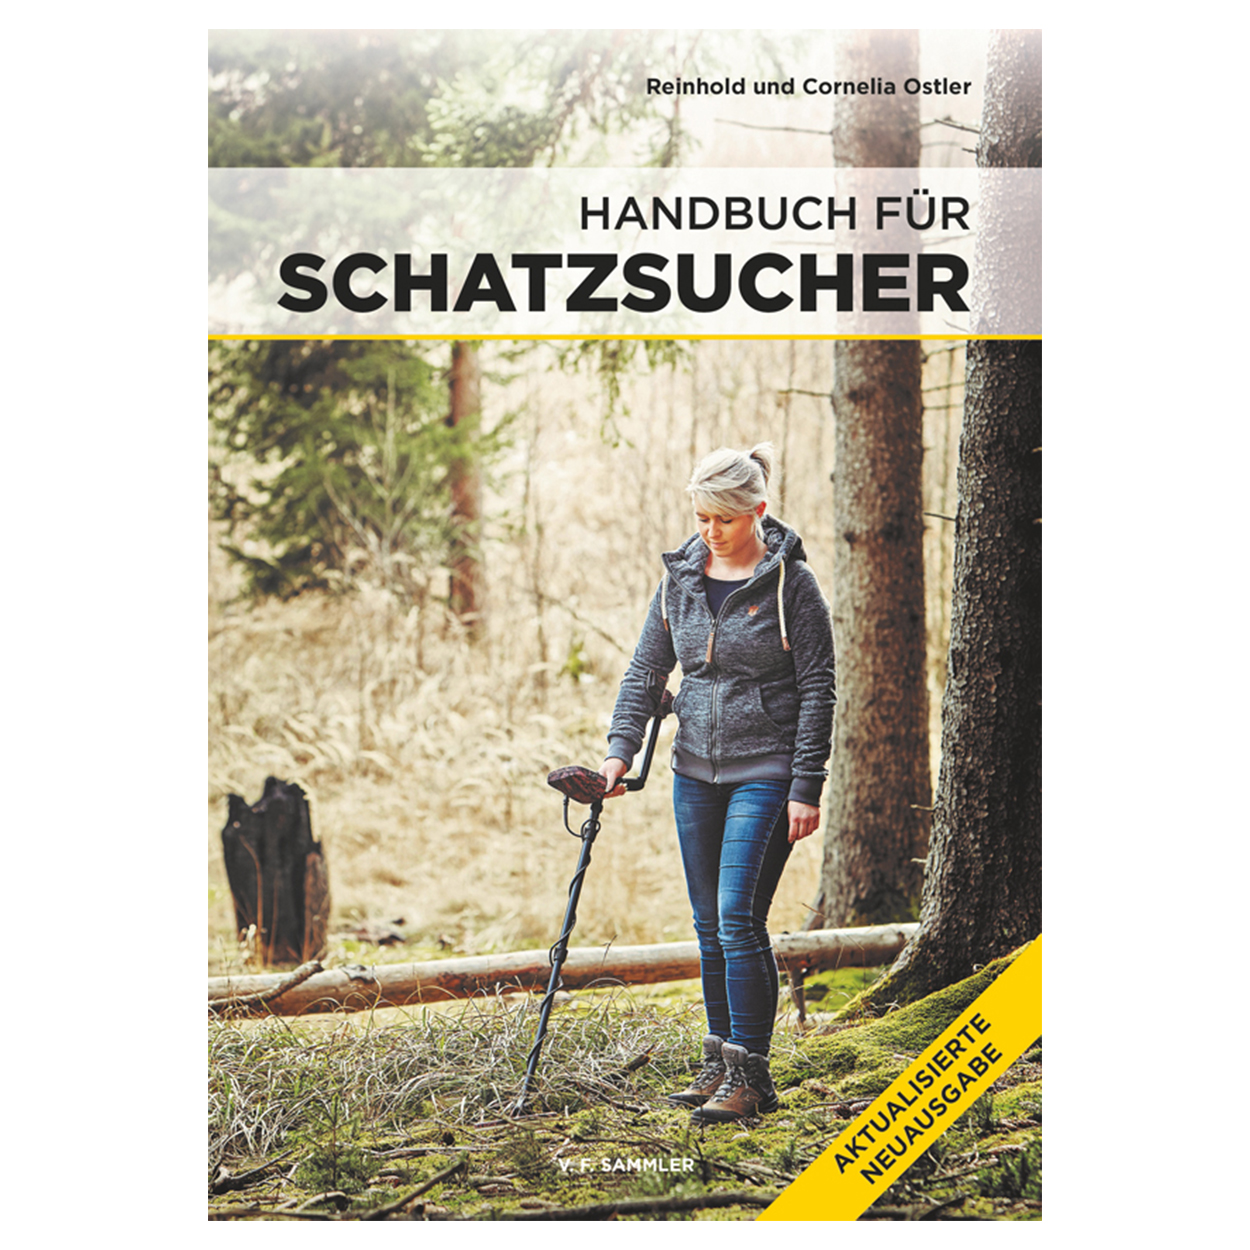 Handbuch für Schatzsucher Aktualisierte Neuausgabe